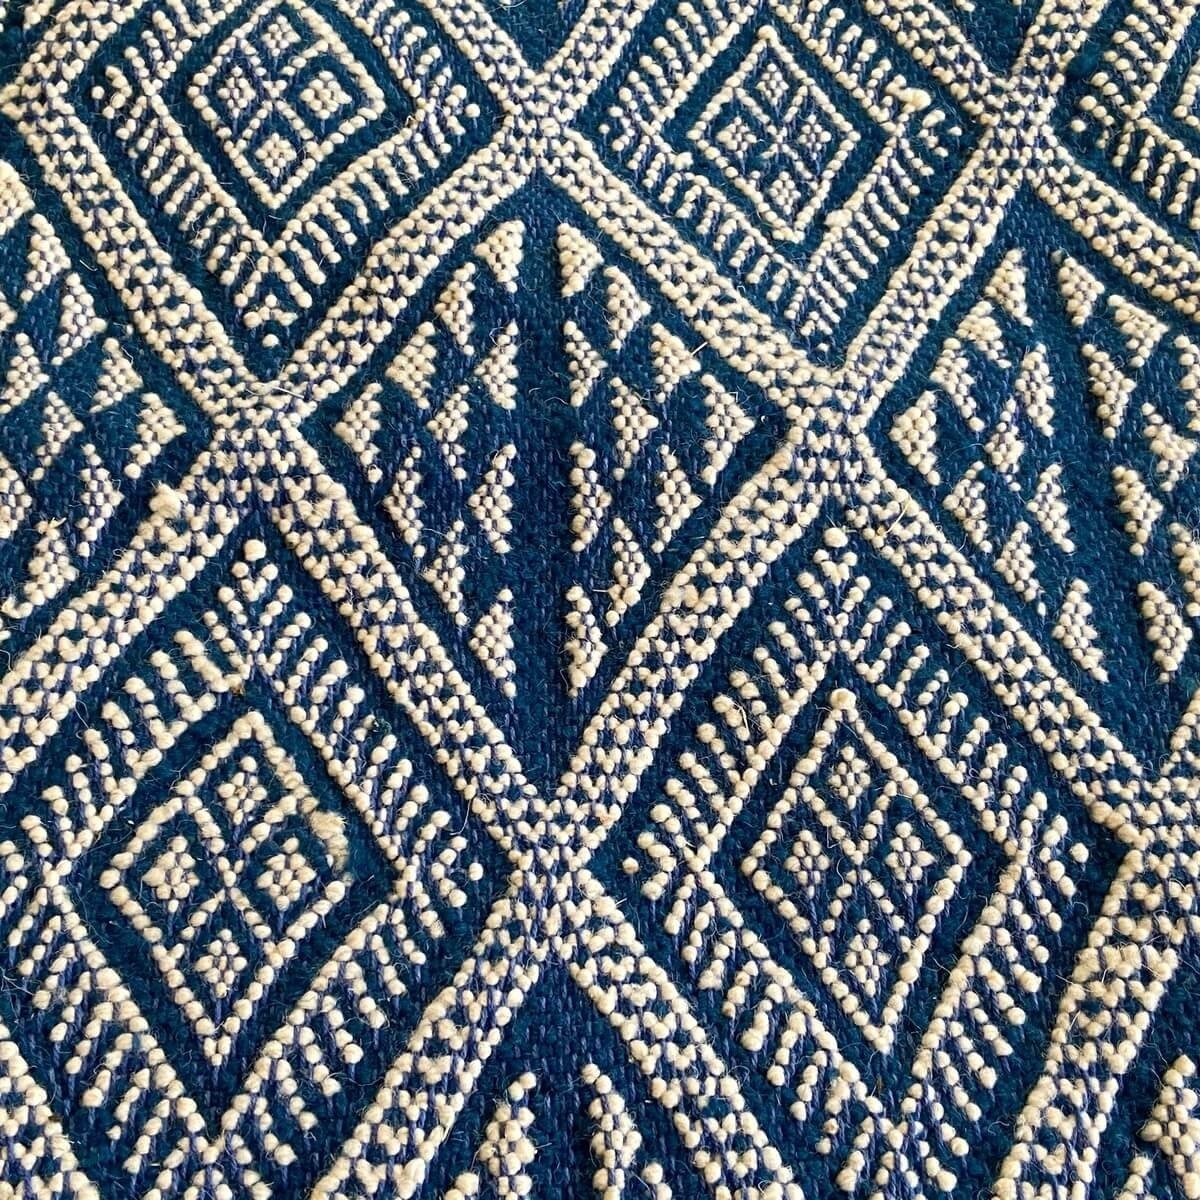 Berber tapijt Tapijt Margoum Makki 124x186 Blauw (Handgeweven, Wol, Tunesië) Tunesisch Margoum Tapijt uit de stad Kairouan. Rech